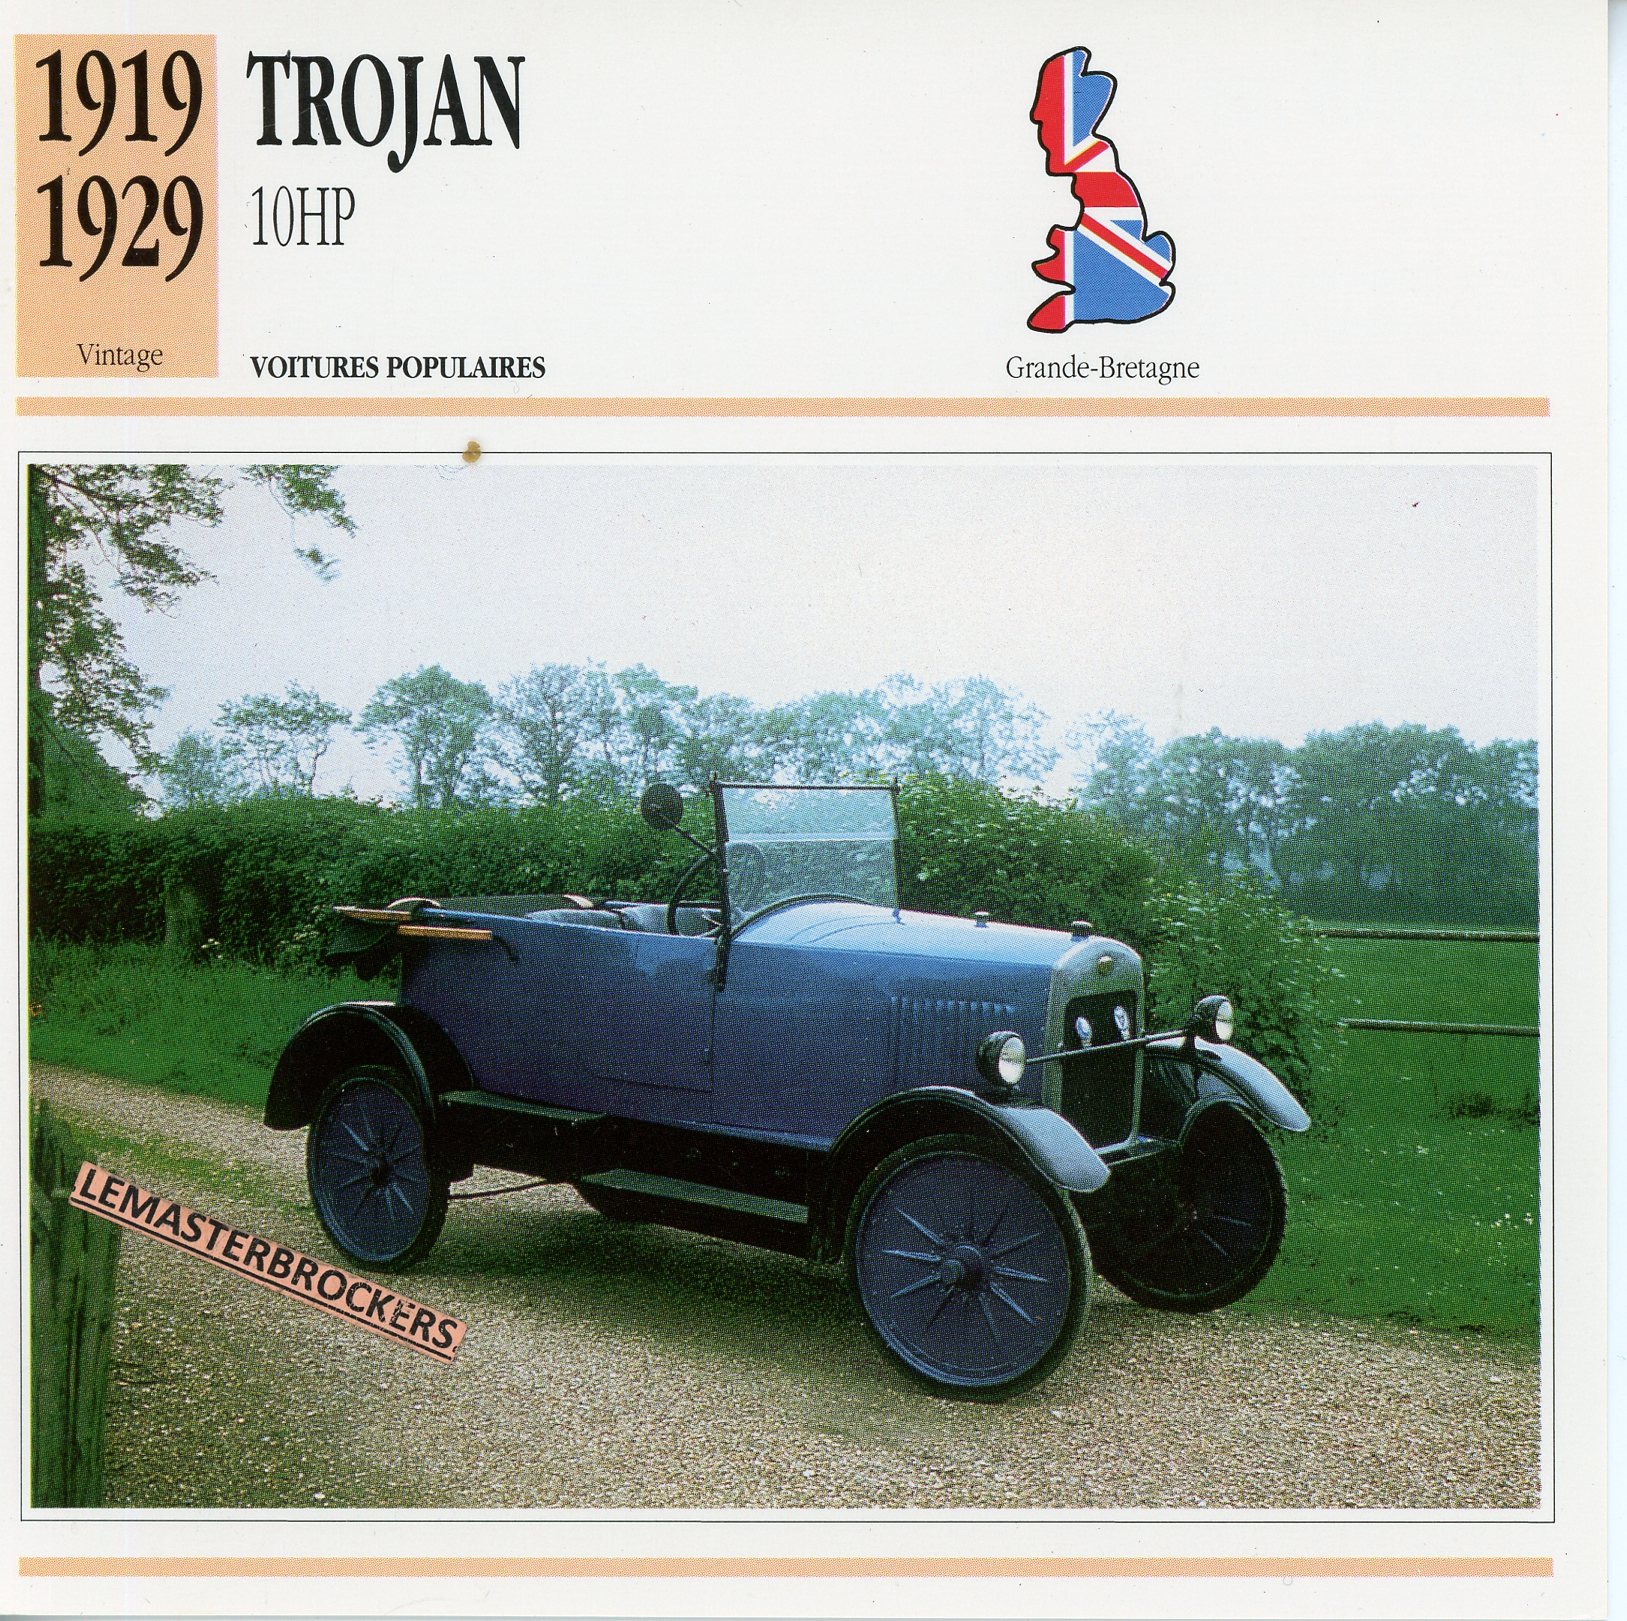 TROJAN-10HP-1919-1929-FICHE-AUTO-ATLAS-LEMASTERBROCKERS